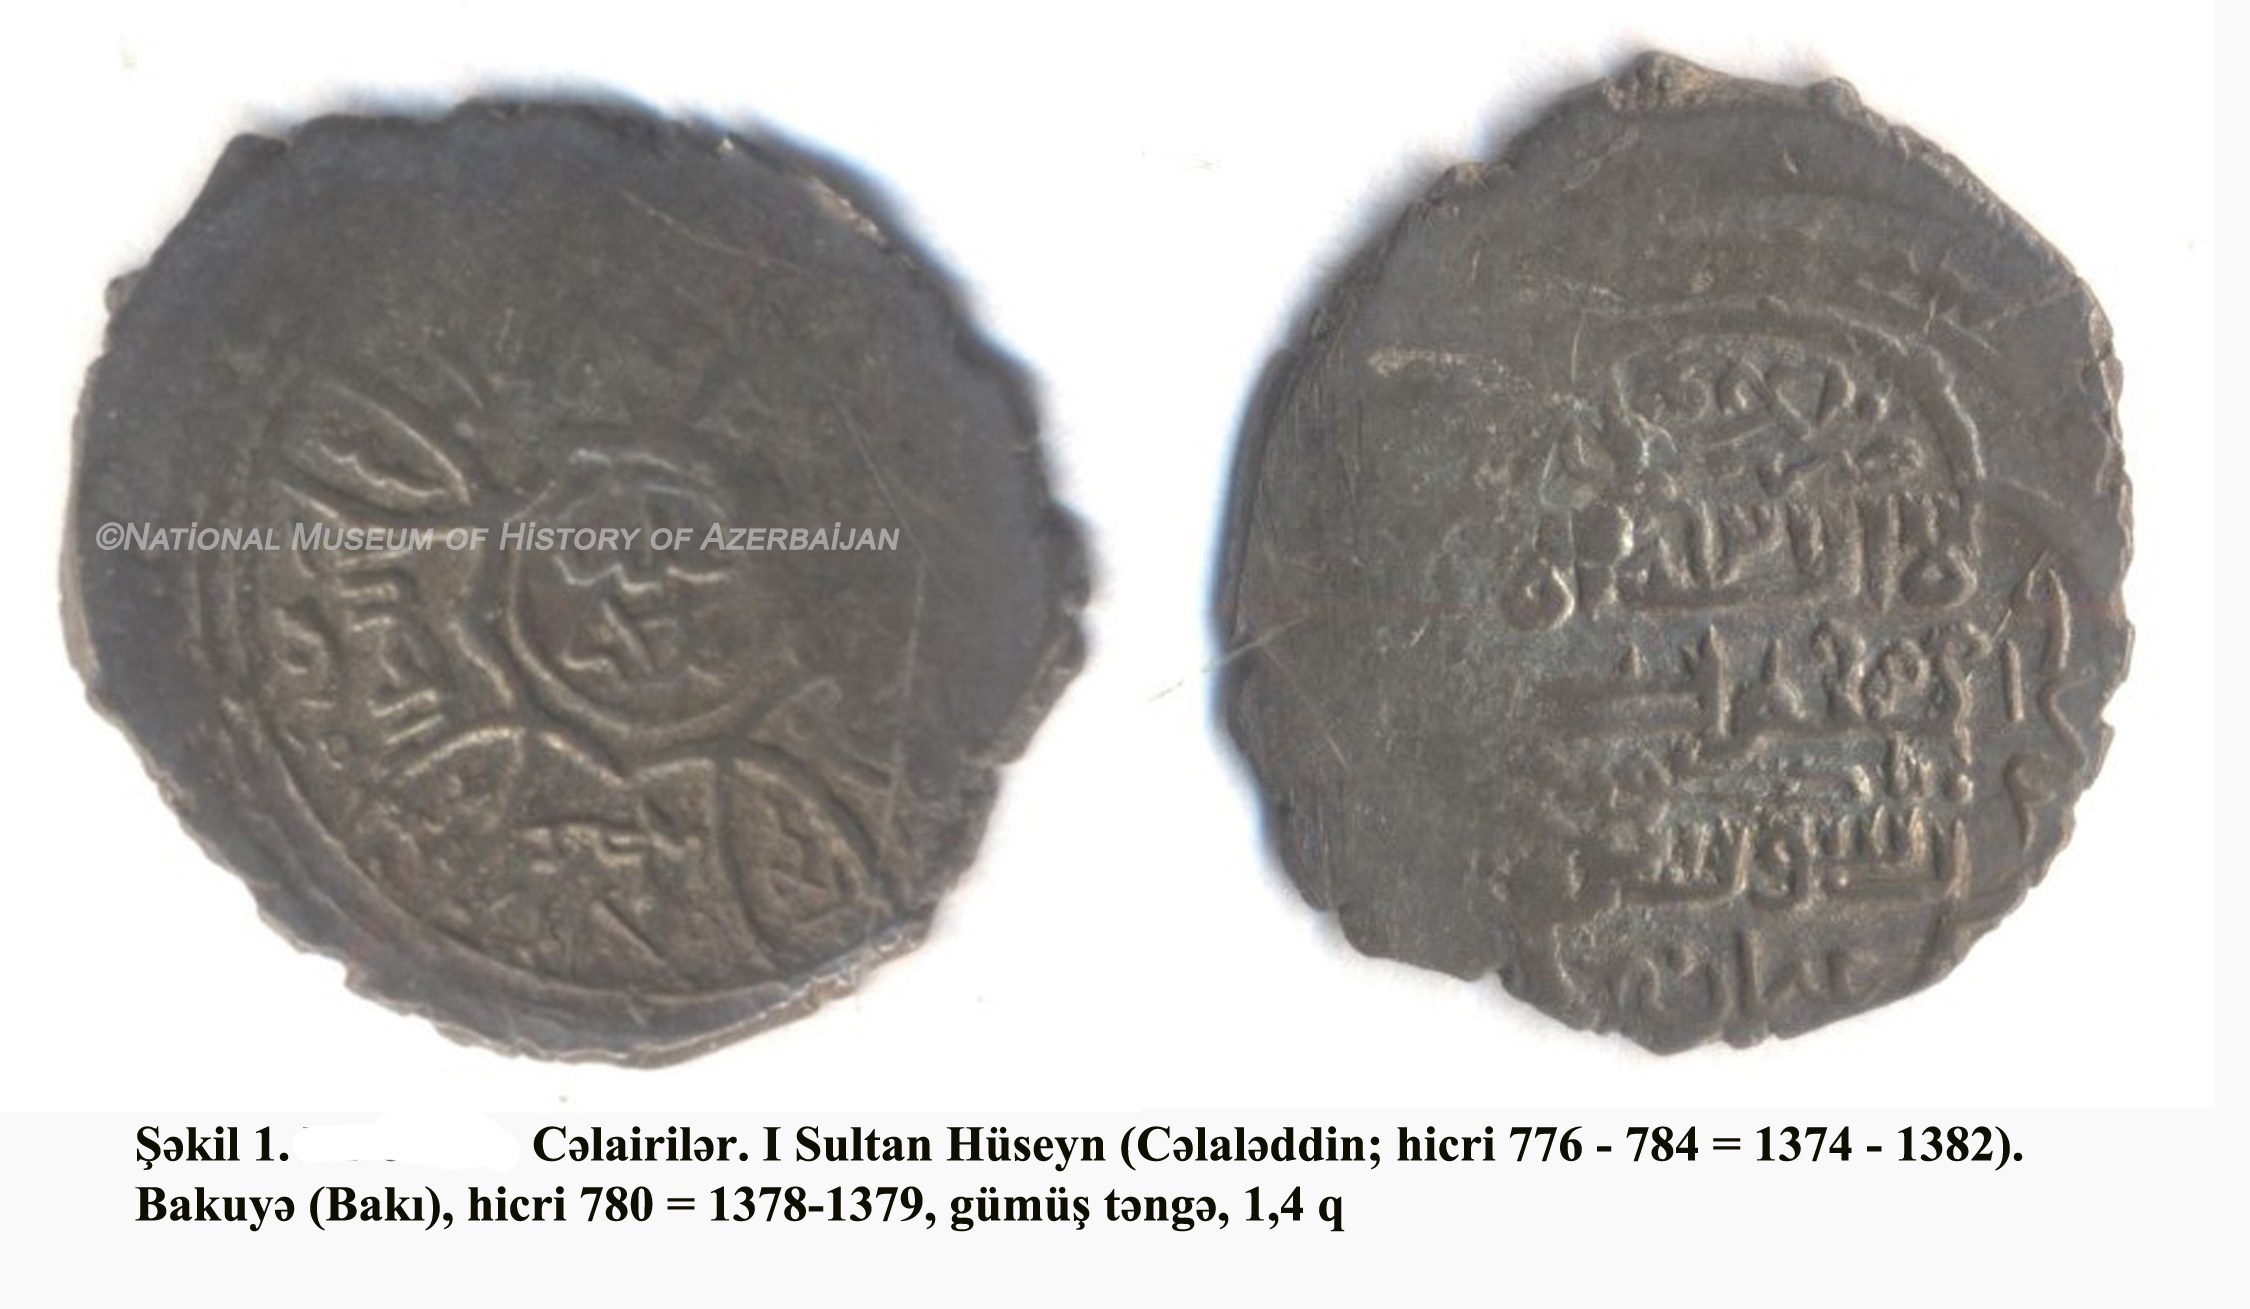 Клад Губадлинских монет, хранящийся в музее, раскрывает денежное обращение данного периода